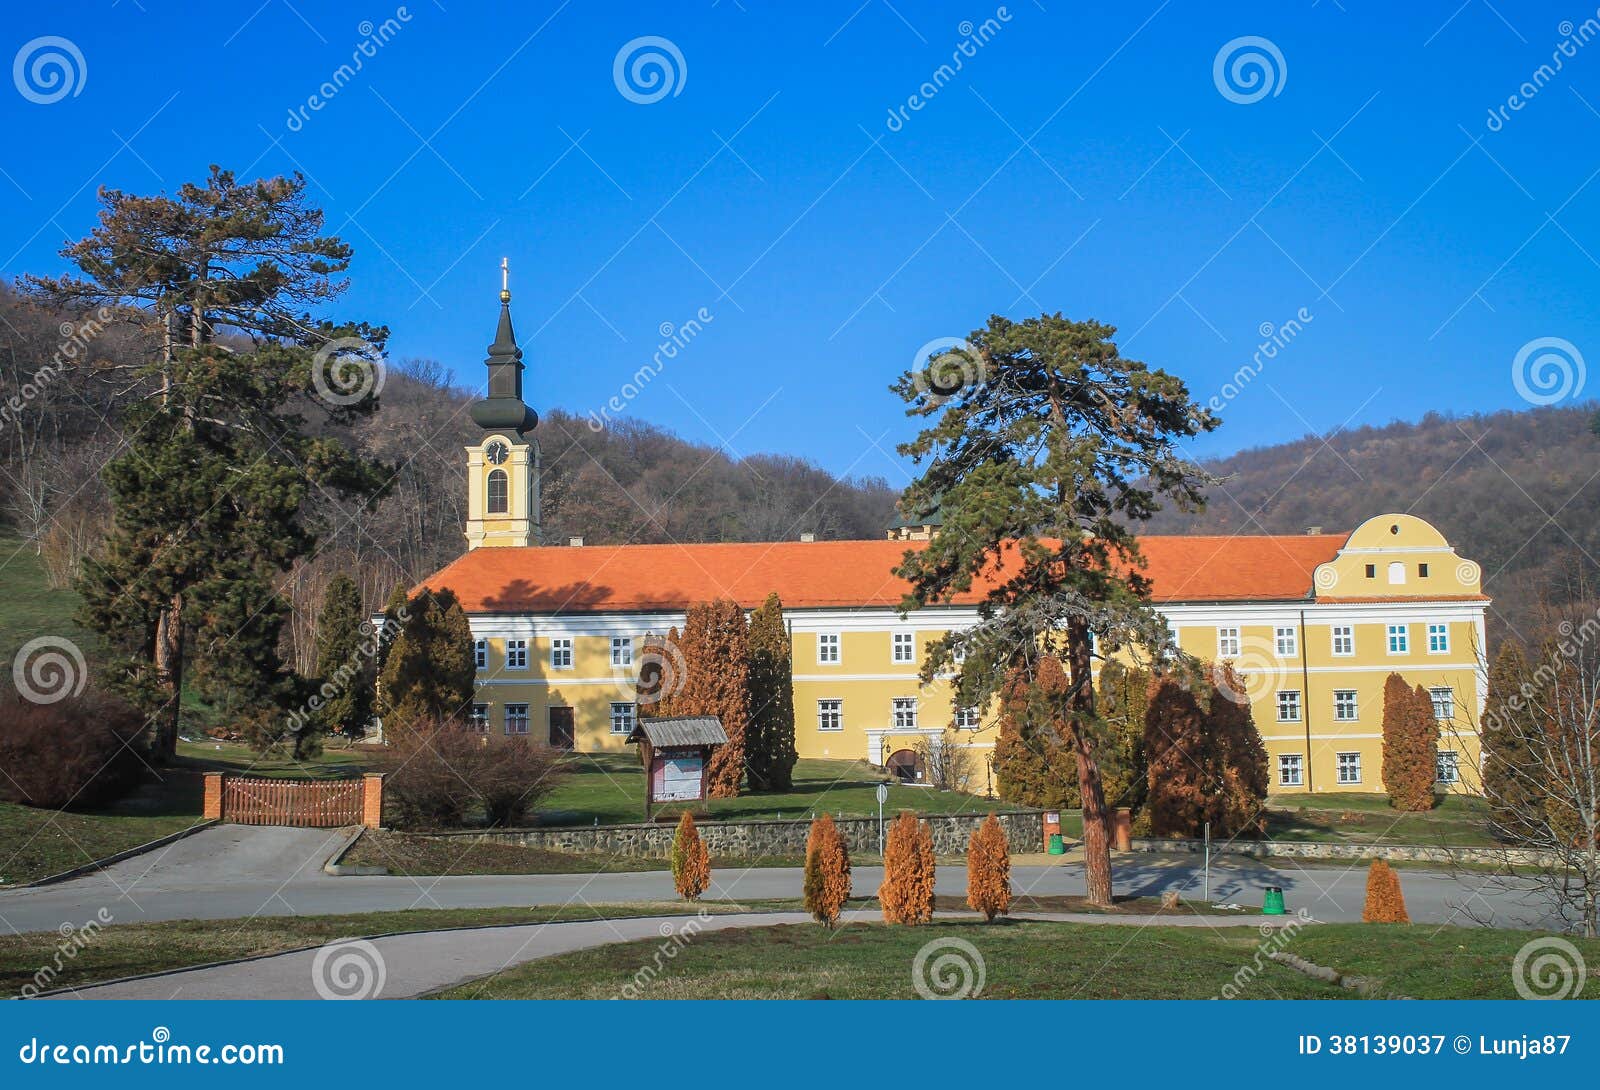 new chopovo monastery (manastir novo shopovo)